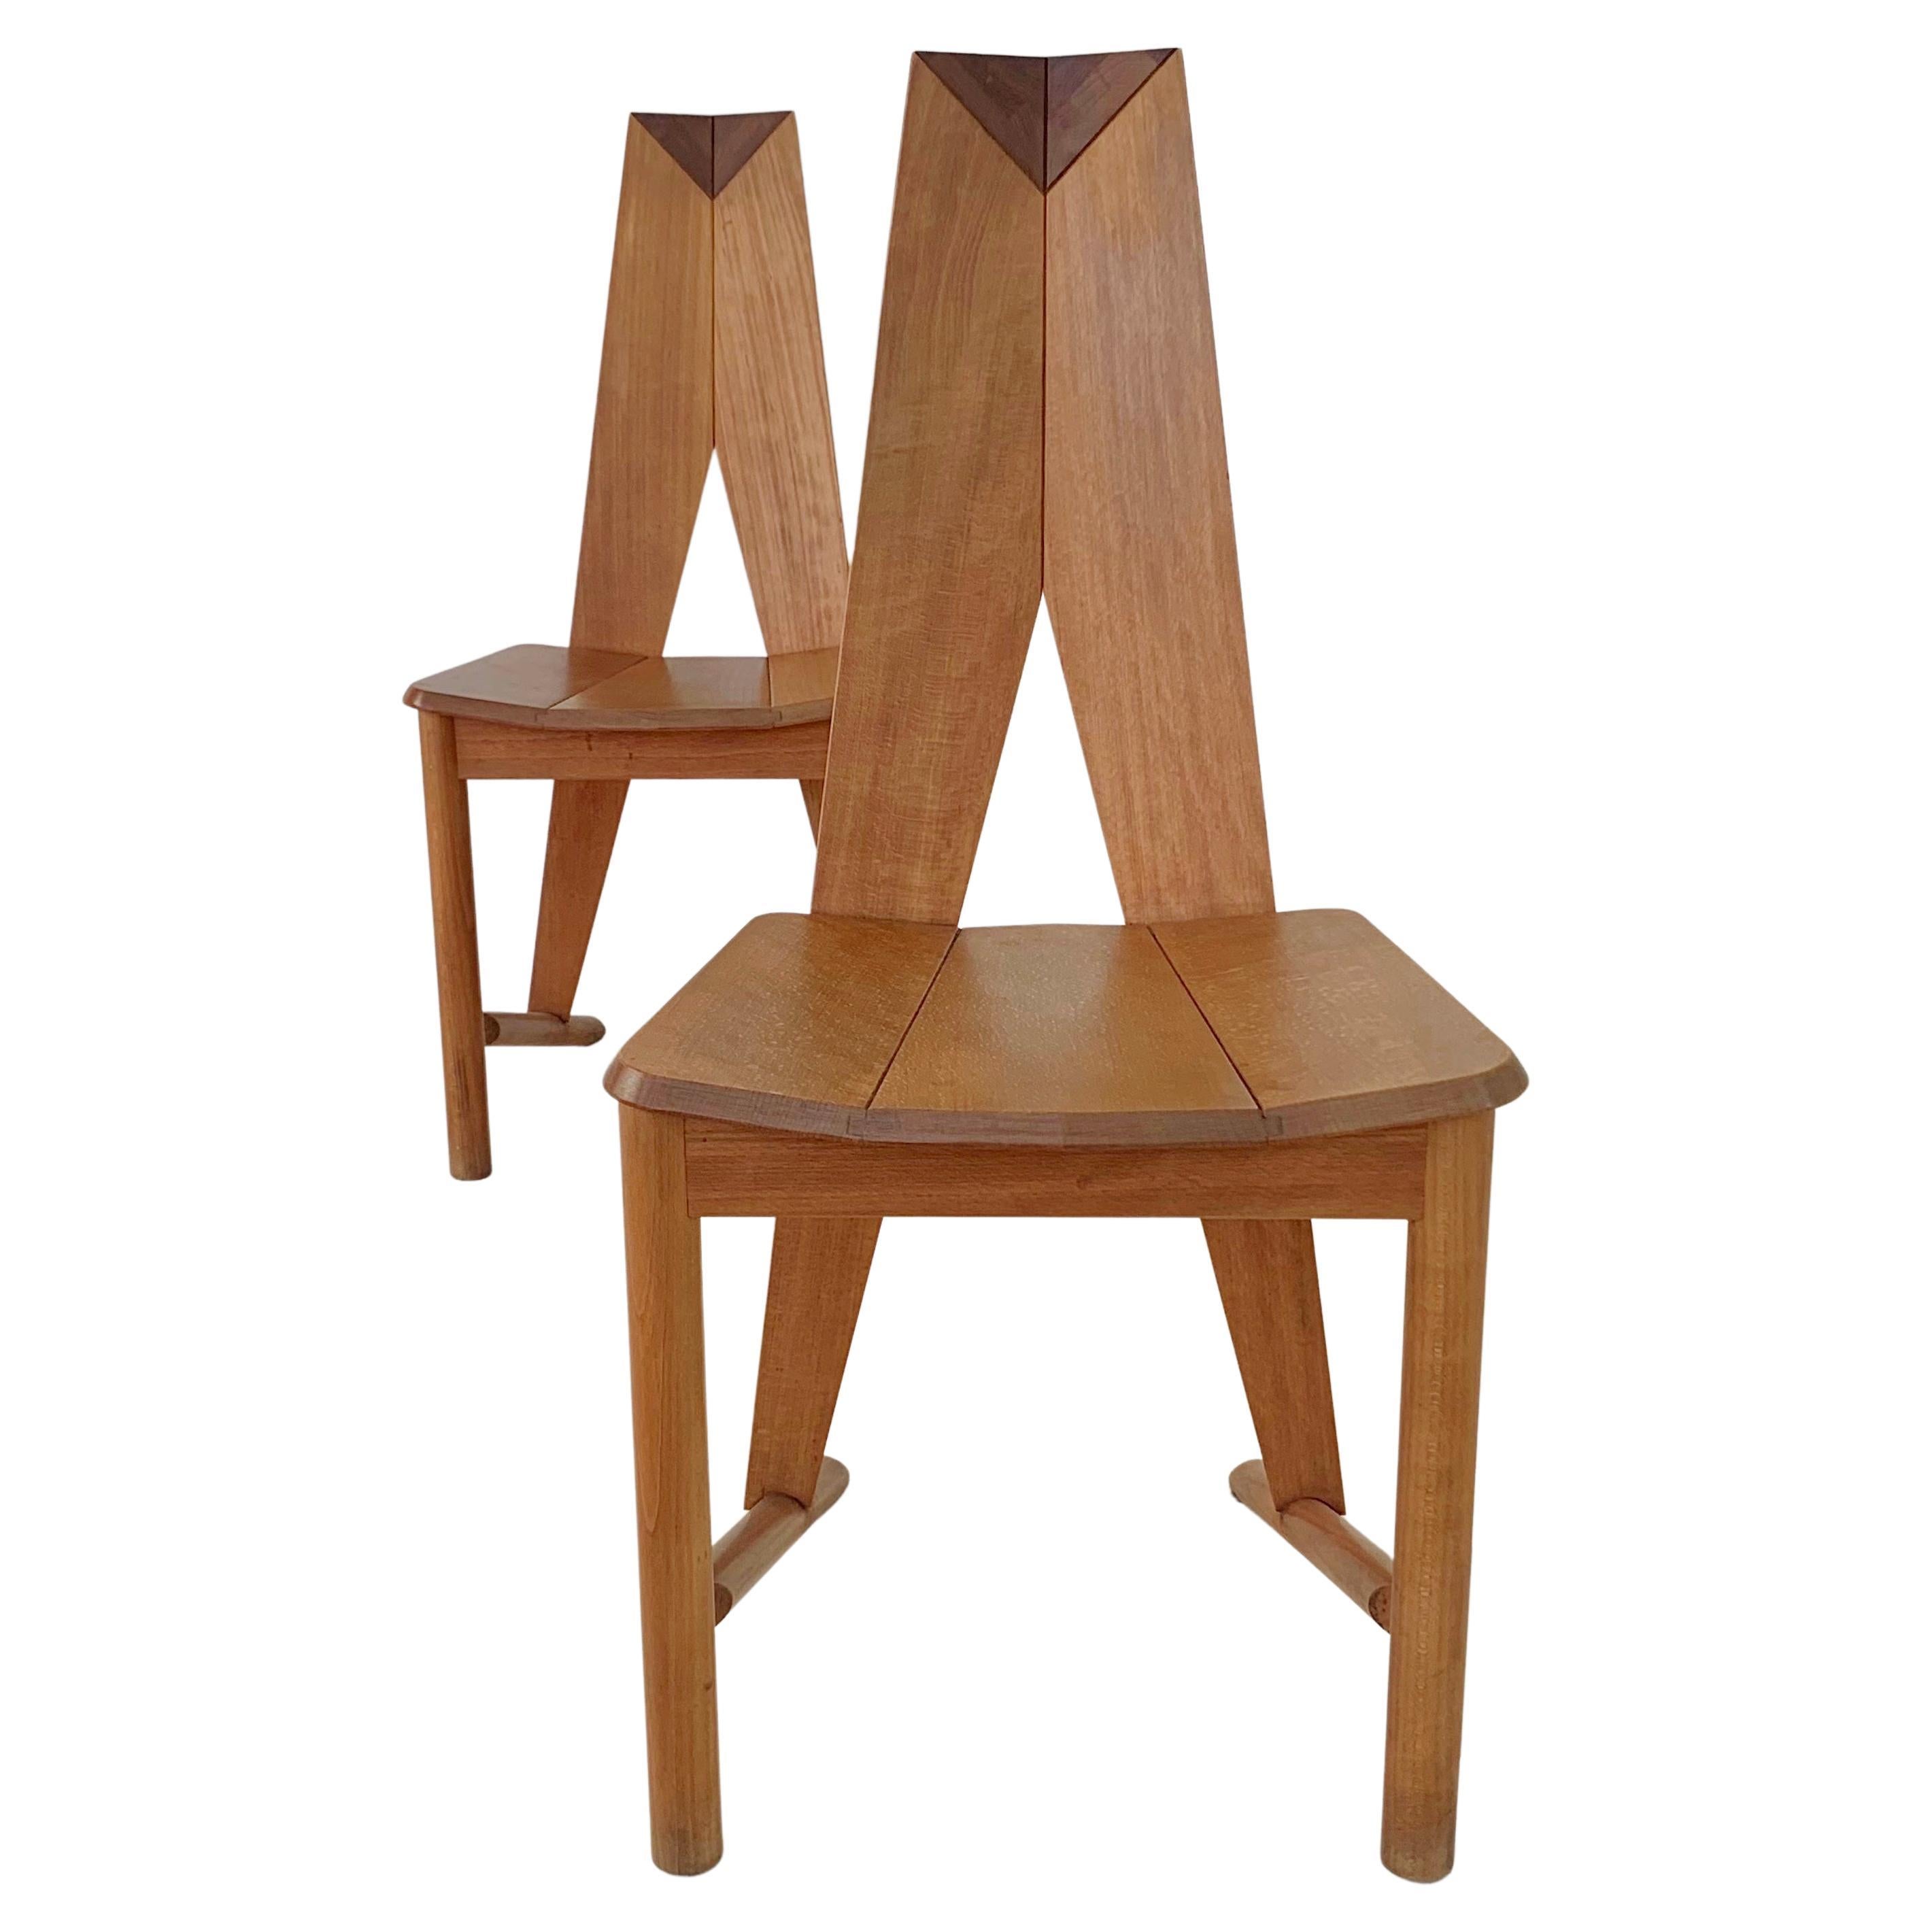 Paire de chaises de salle à manger pour Seltz, France, vers 1980.
Hêtre massif.
Dimensions : 95 cm H, 46 cm L, 55 cm P, hauteur d'assise : 45 cm.
Bon état d'origine.
Une autre paire est disponible.
Tous les achats sont couverts par notre garantie de